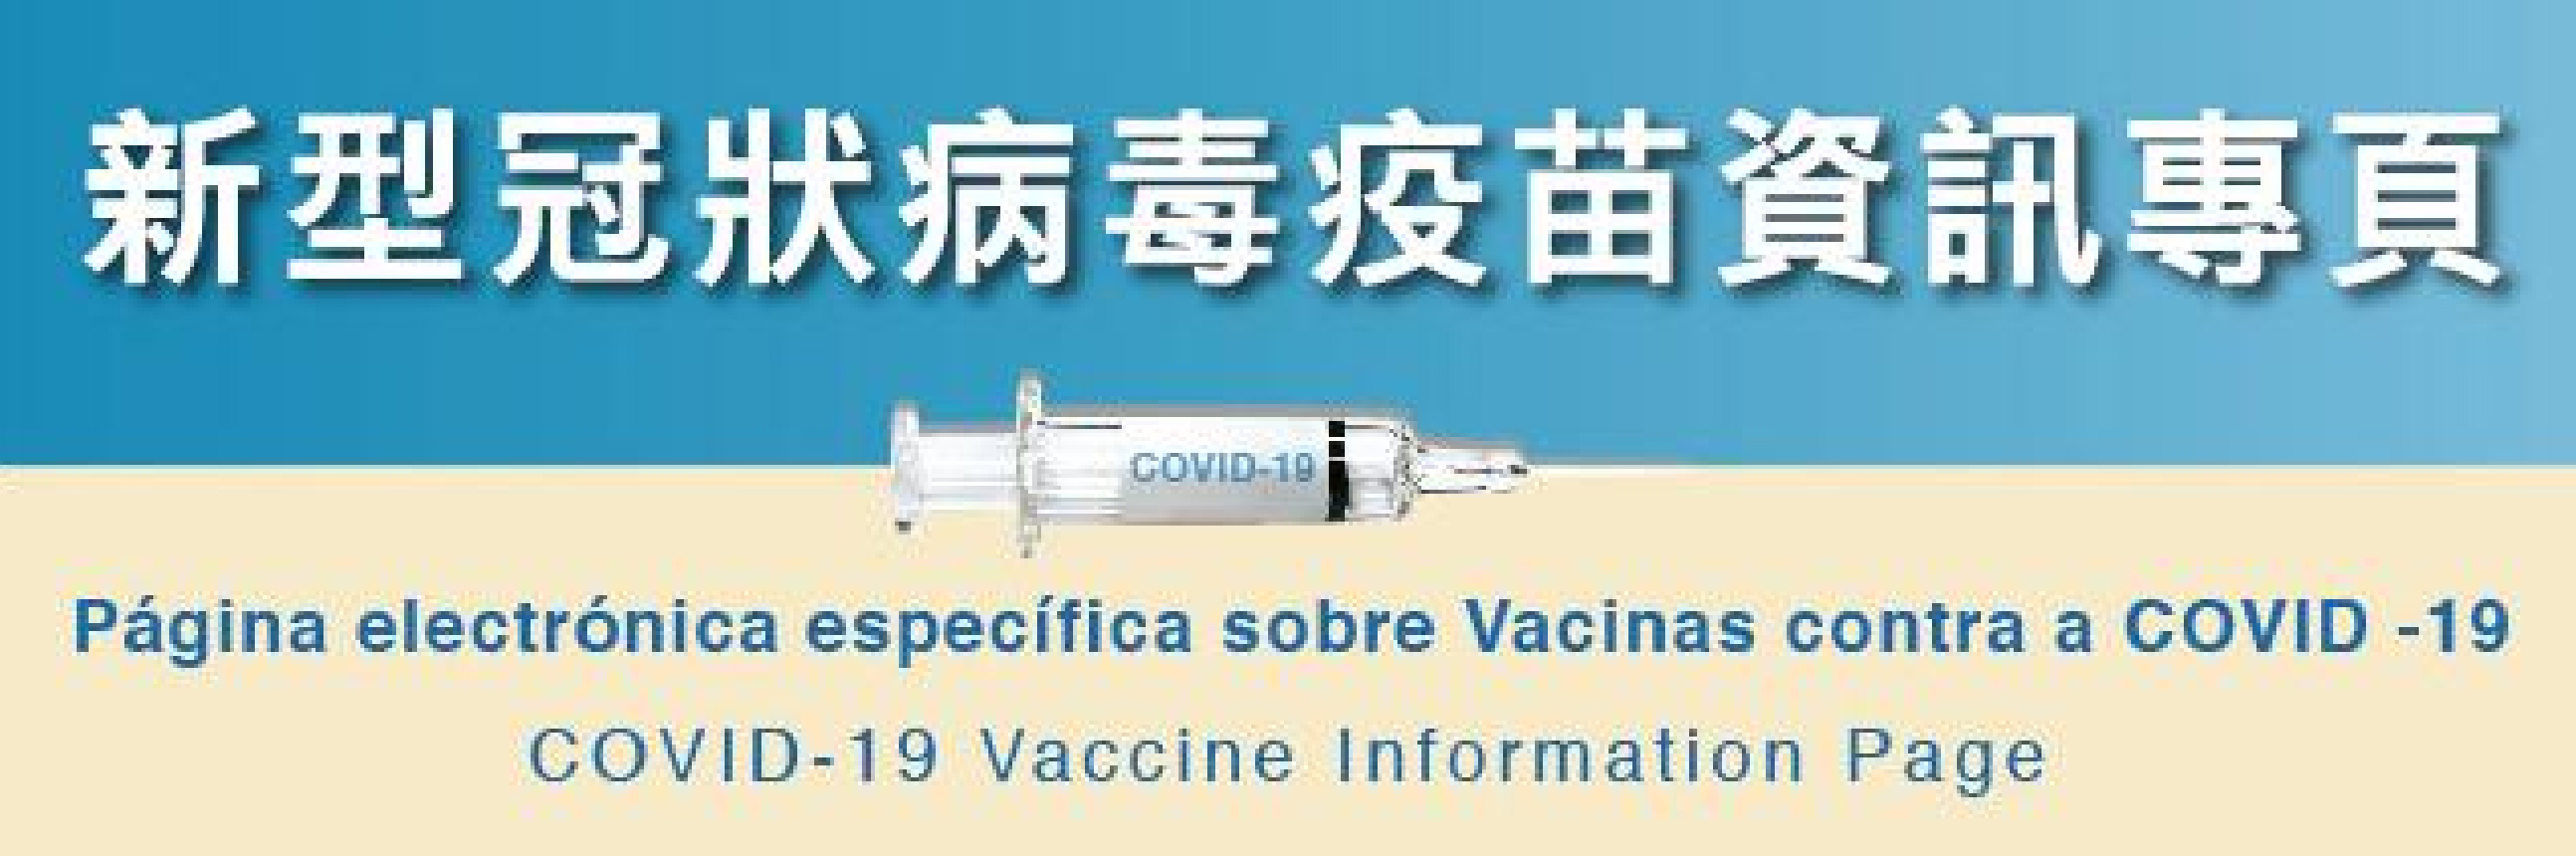 新型冠状病毒疫苗专页